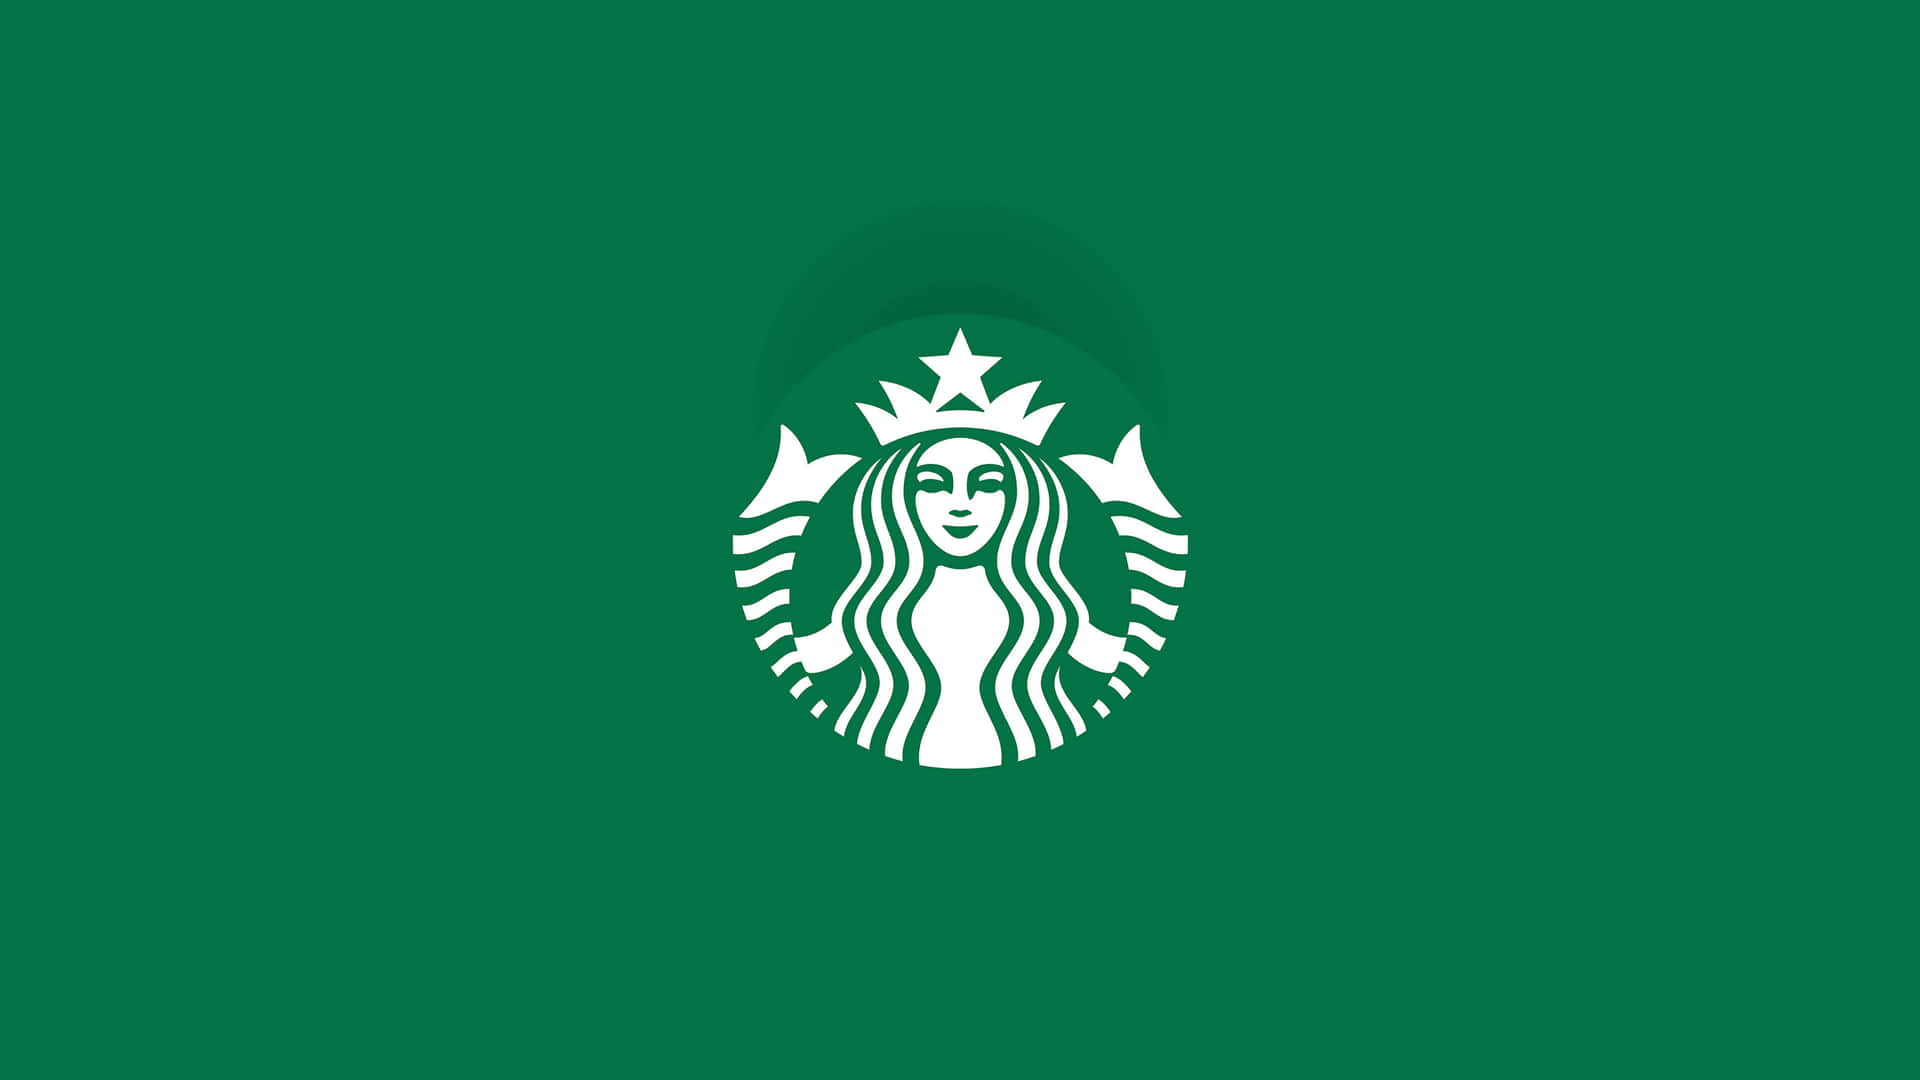 starbucks logo on green background